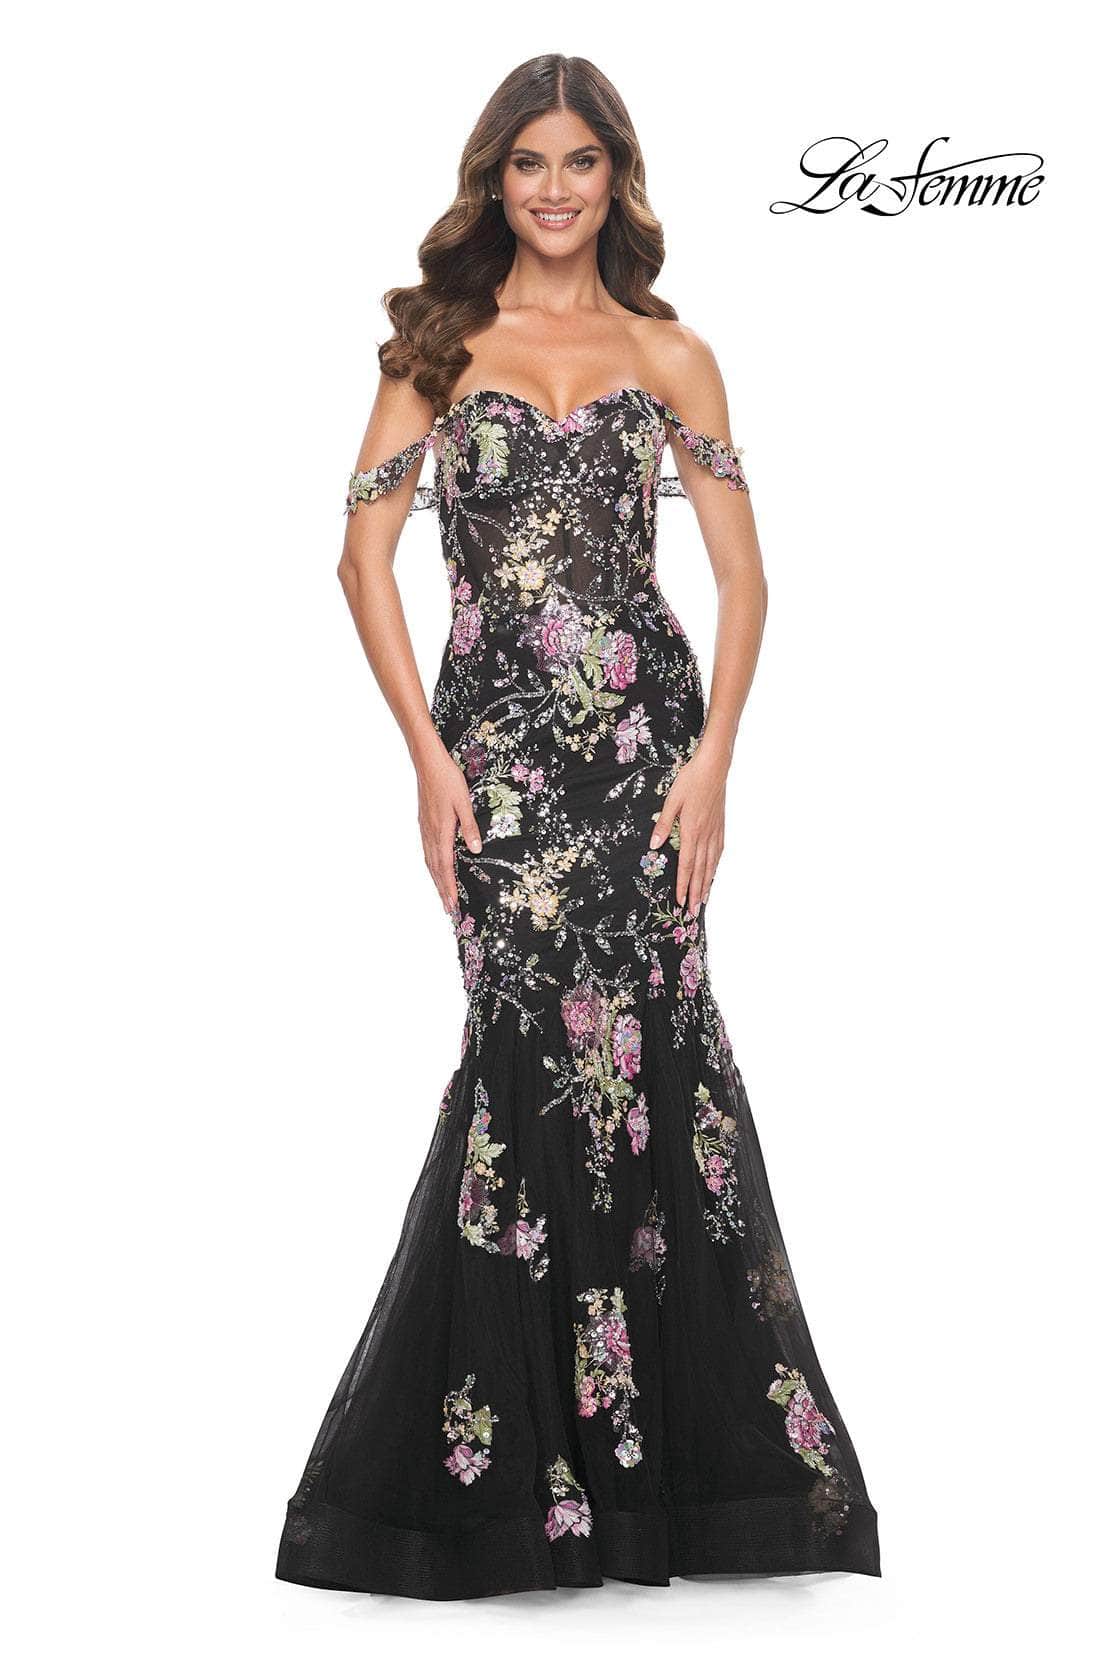 La Femme 32087 - Floral Sequin Embellished Off-Shoulder Prom Gown
